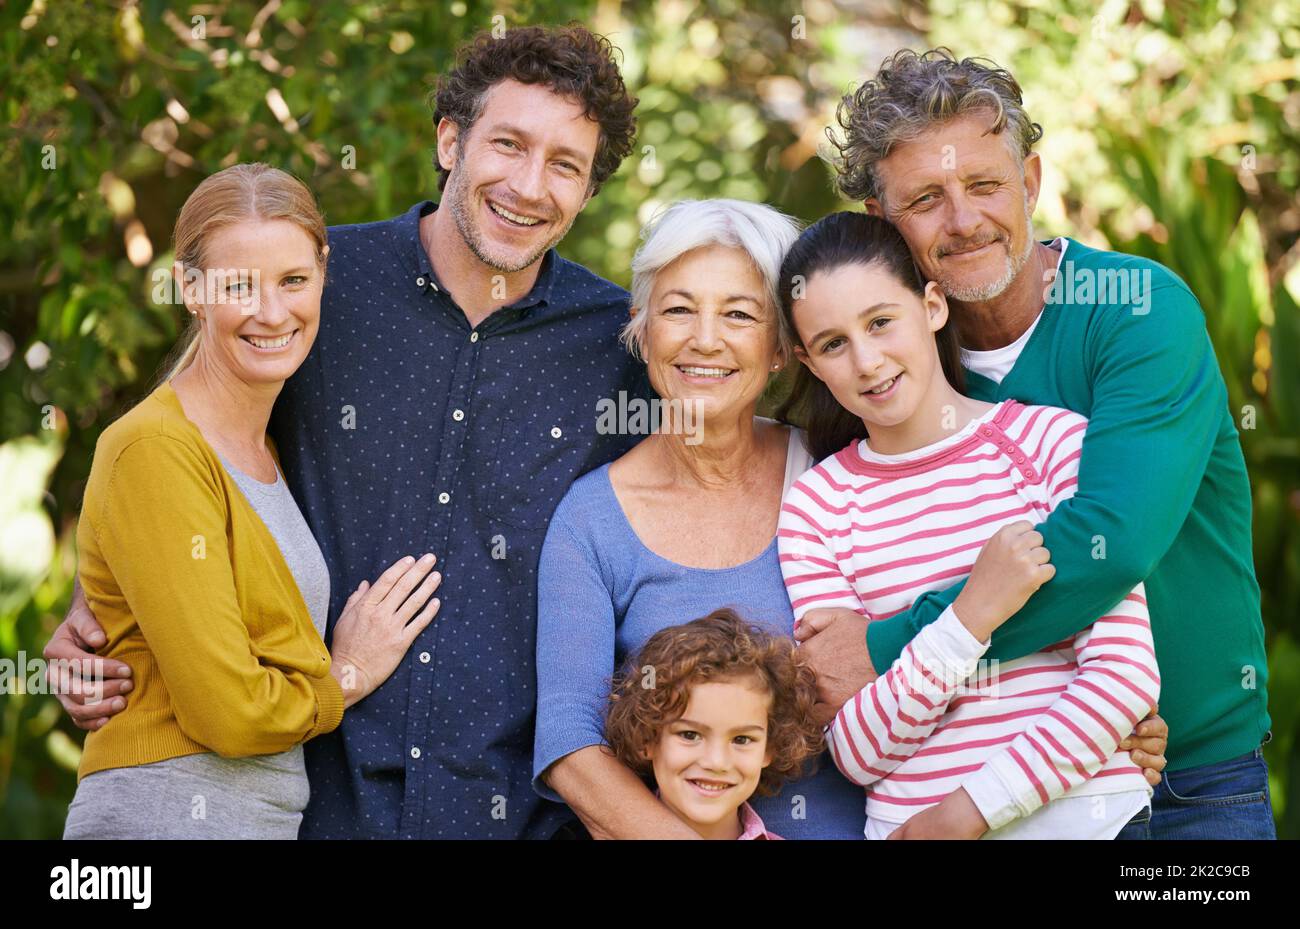 La famille est leur plus important Trésor. Photo d'une famille posant pour une photo en plein air. Banque D'Images